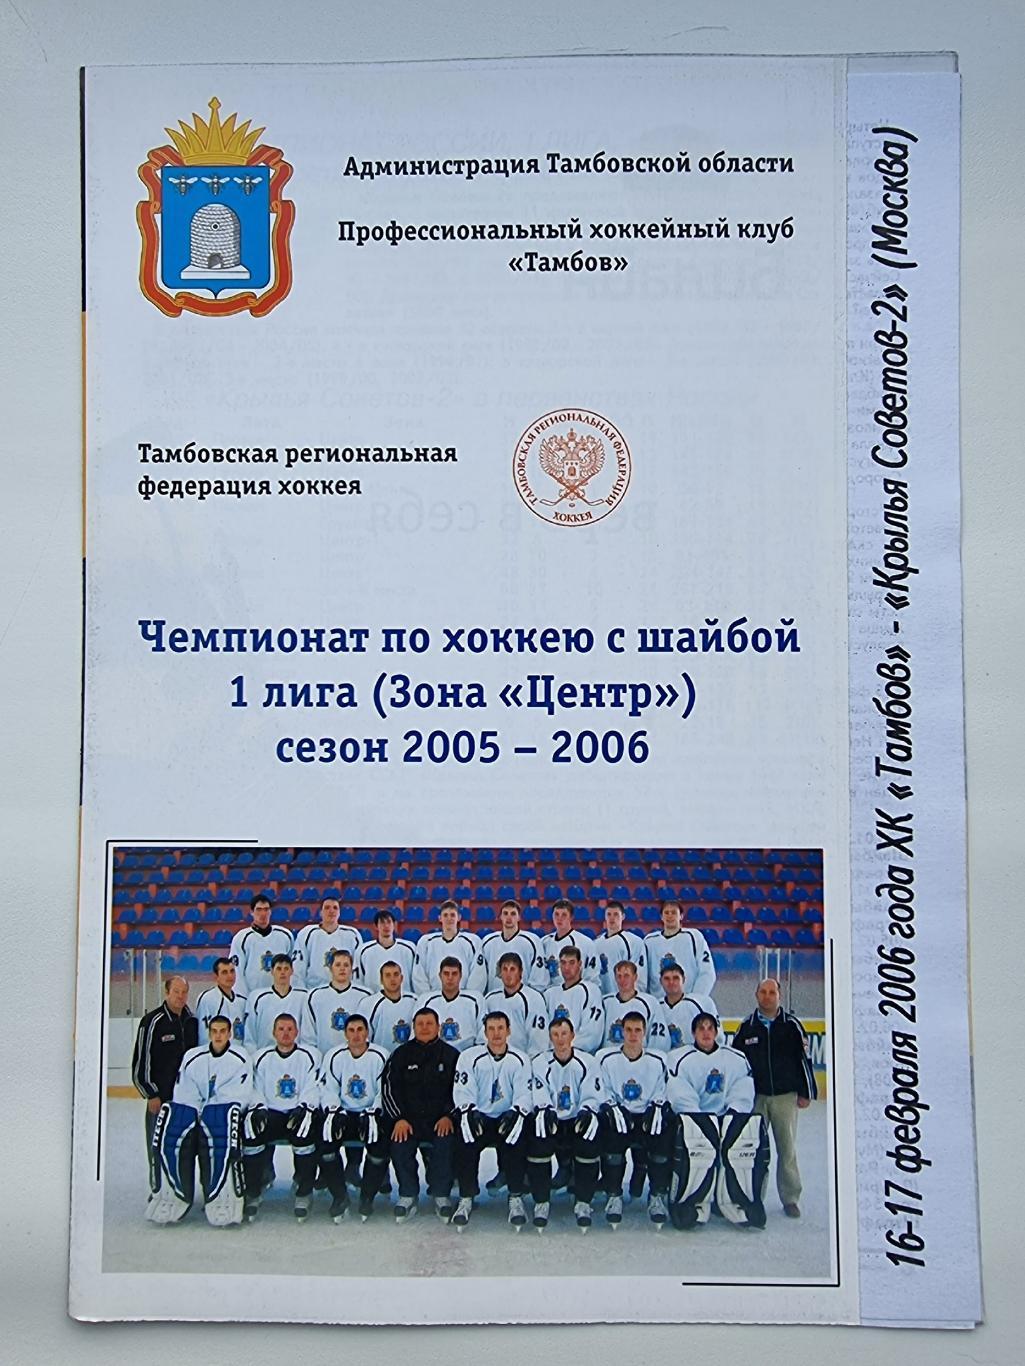 ХК Тамбов - Крылья Советов Москва 16/17 февраля 2006